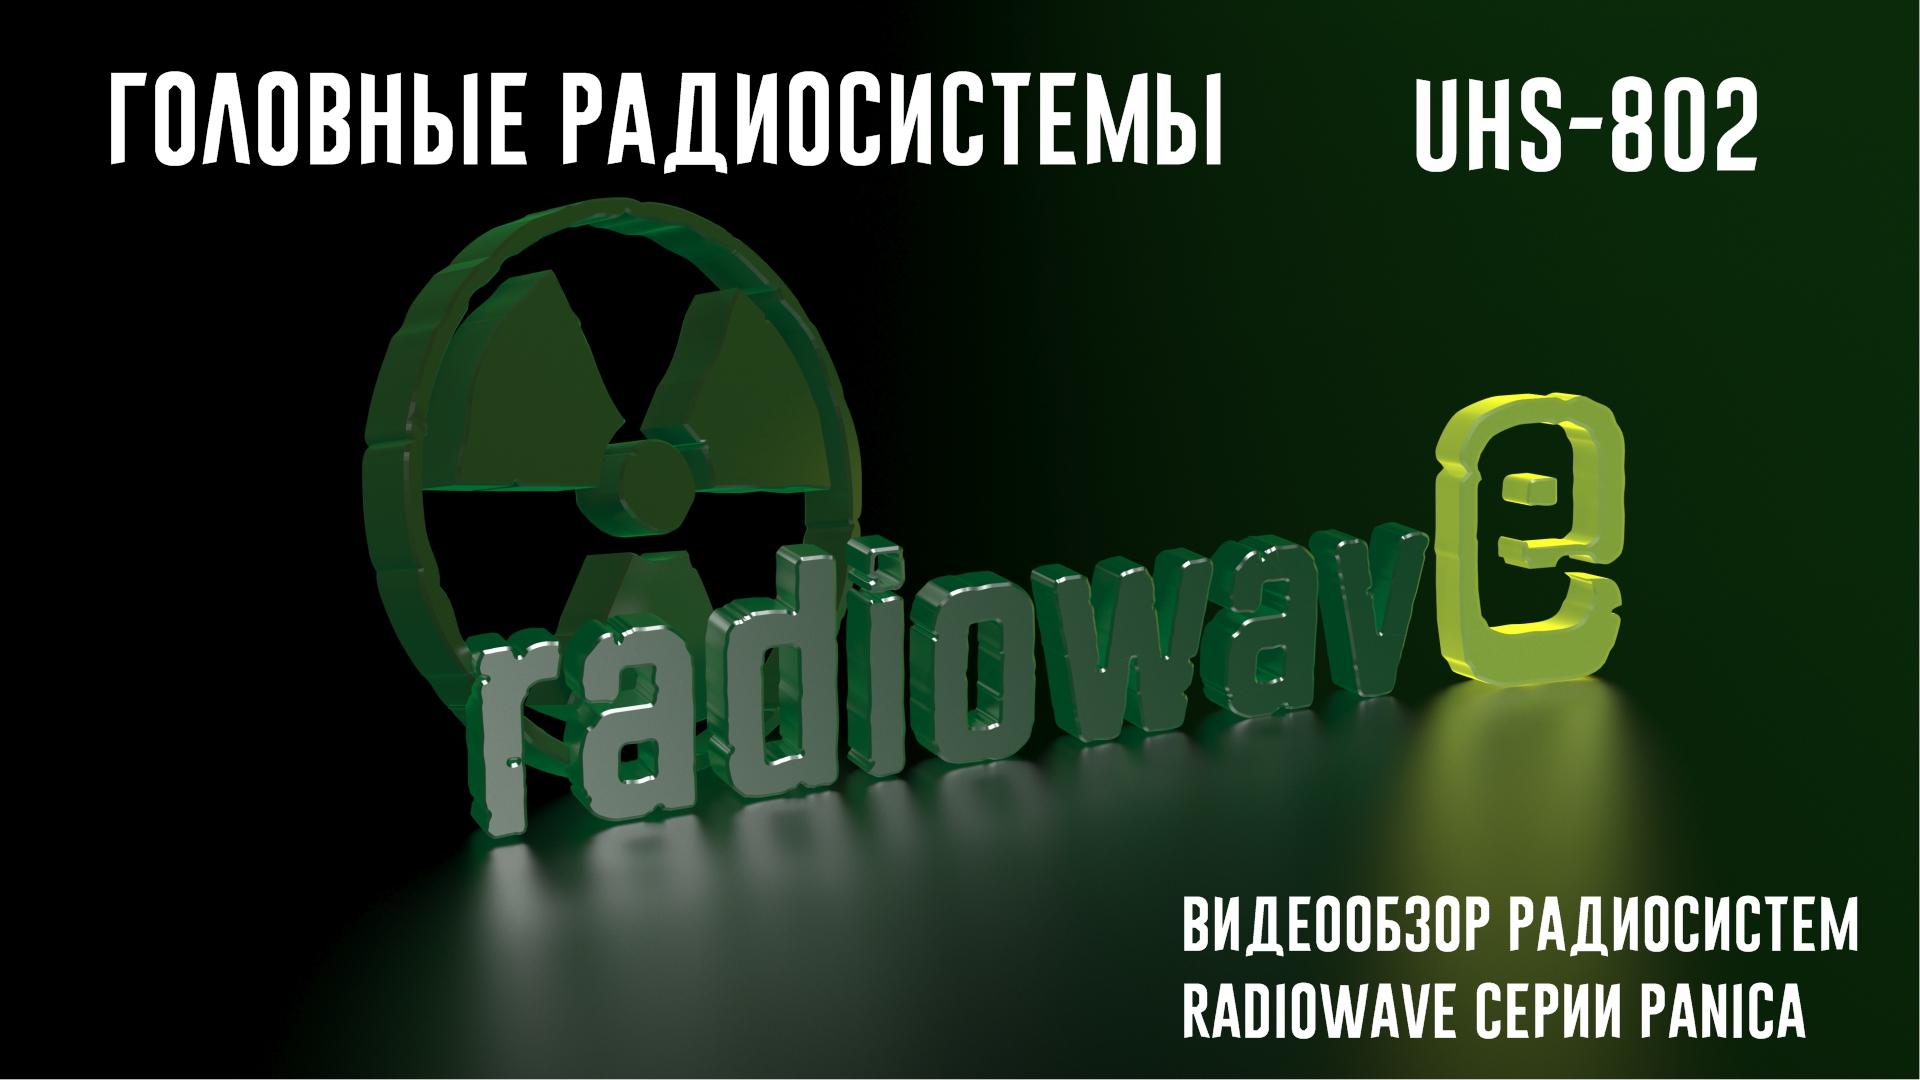 Radiowave UHS-802 Головные Радиосистемы